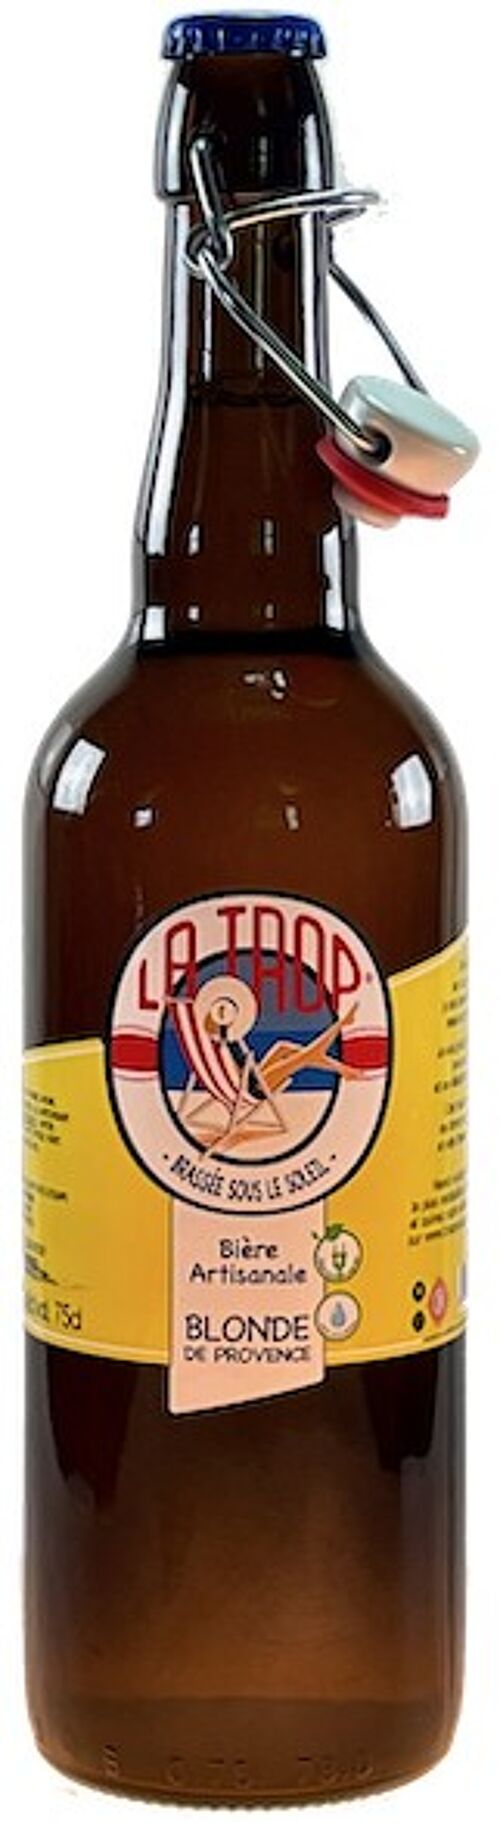 Bière LA TROP' Blonde 5,5% 75cl